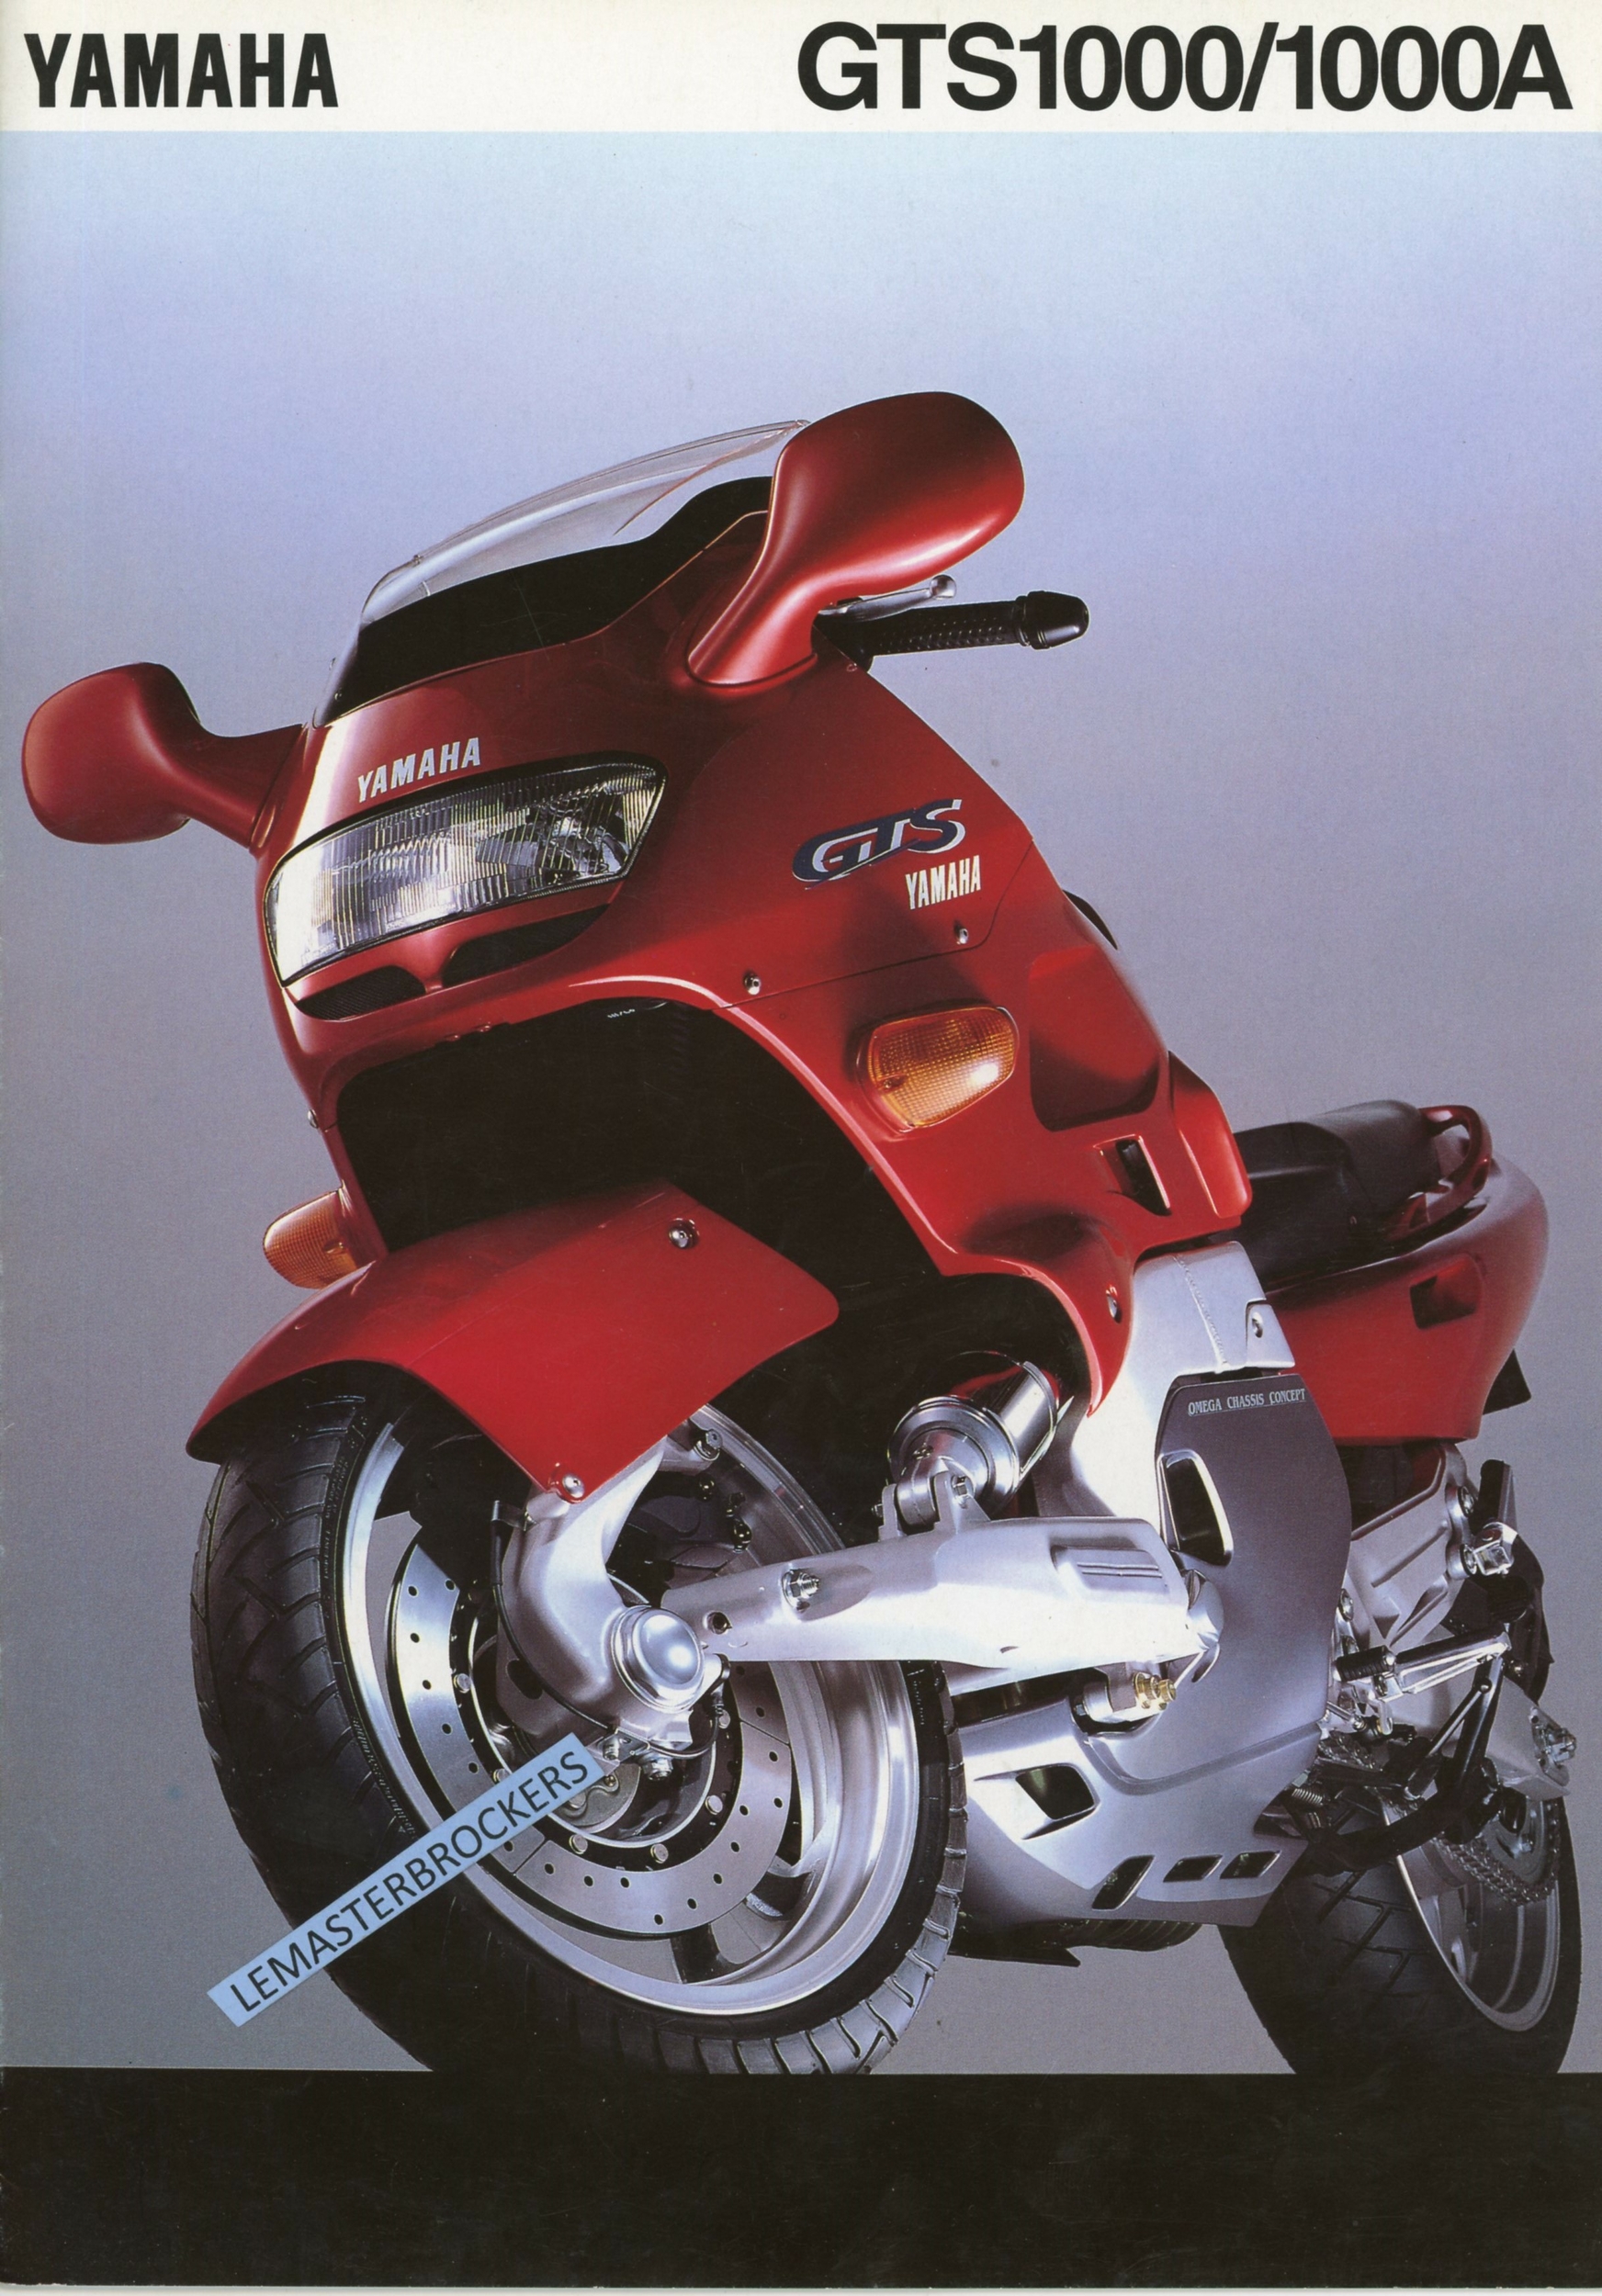 YAMAHA-GTS1000-1000A-BROCHURE-CATALOGUE-MOTO-LEMASTERBROCKERS